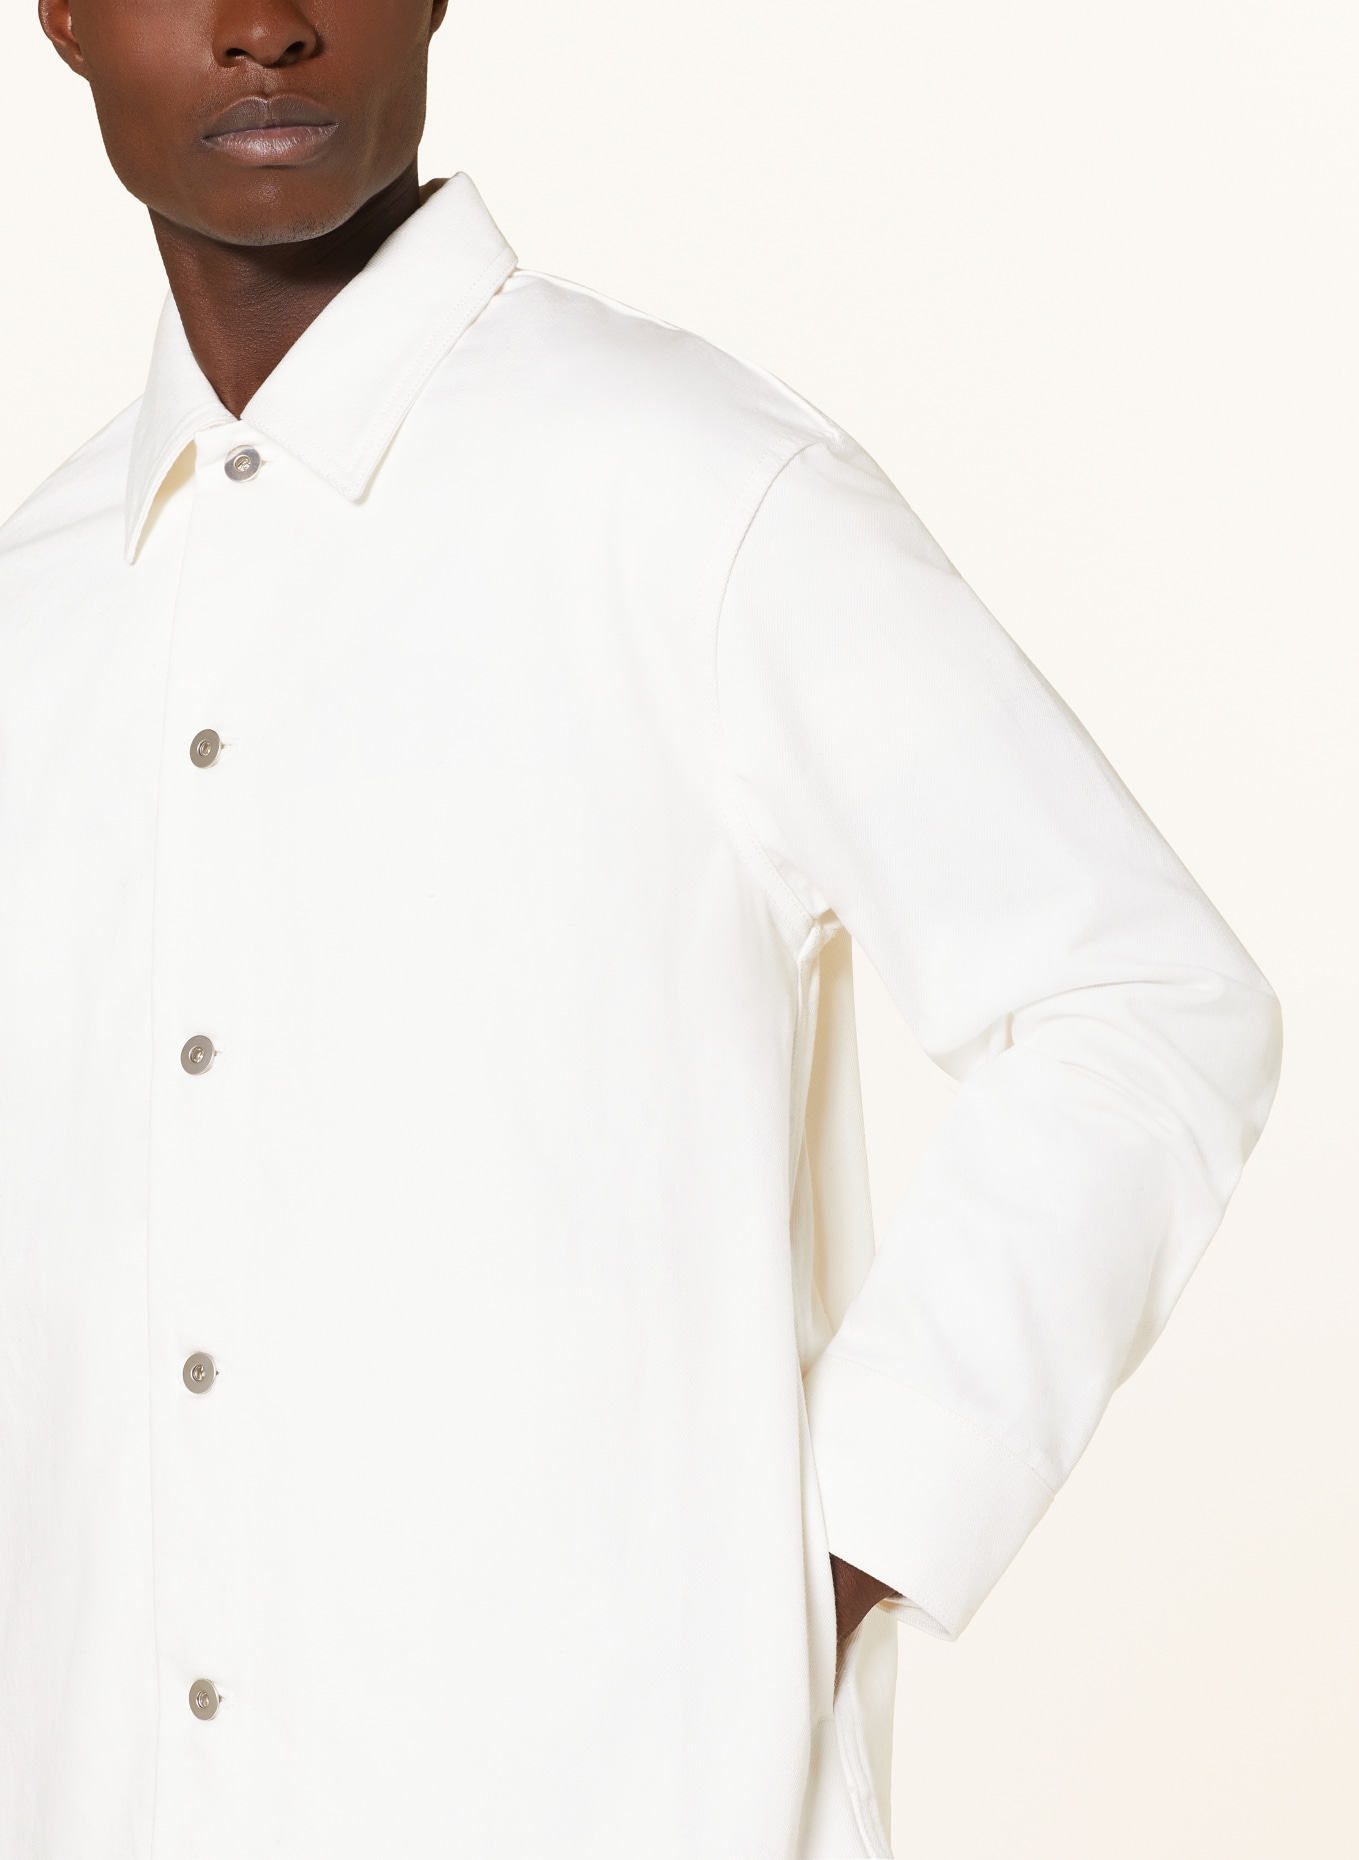 JIL SANDER Denim overshirt, Color: WHITE (Image 4)